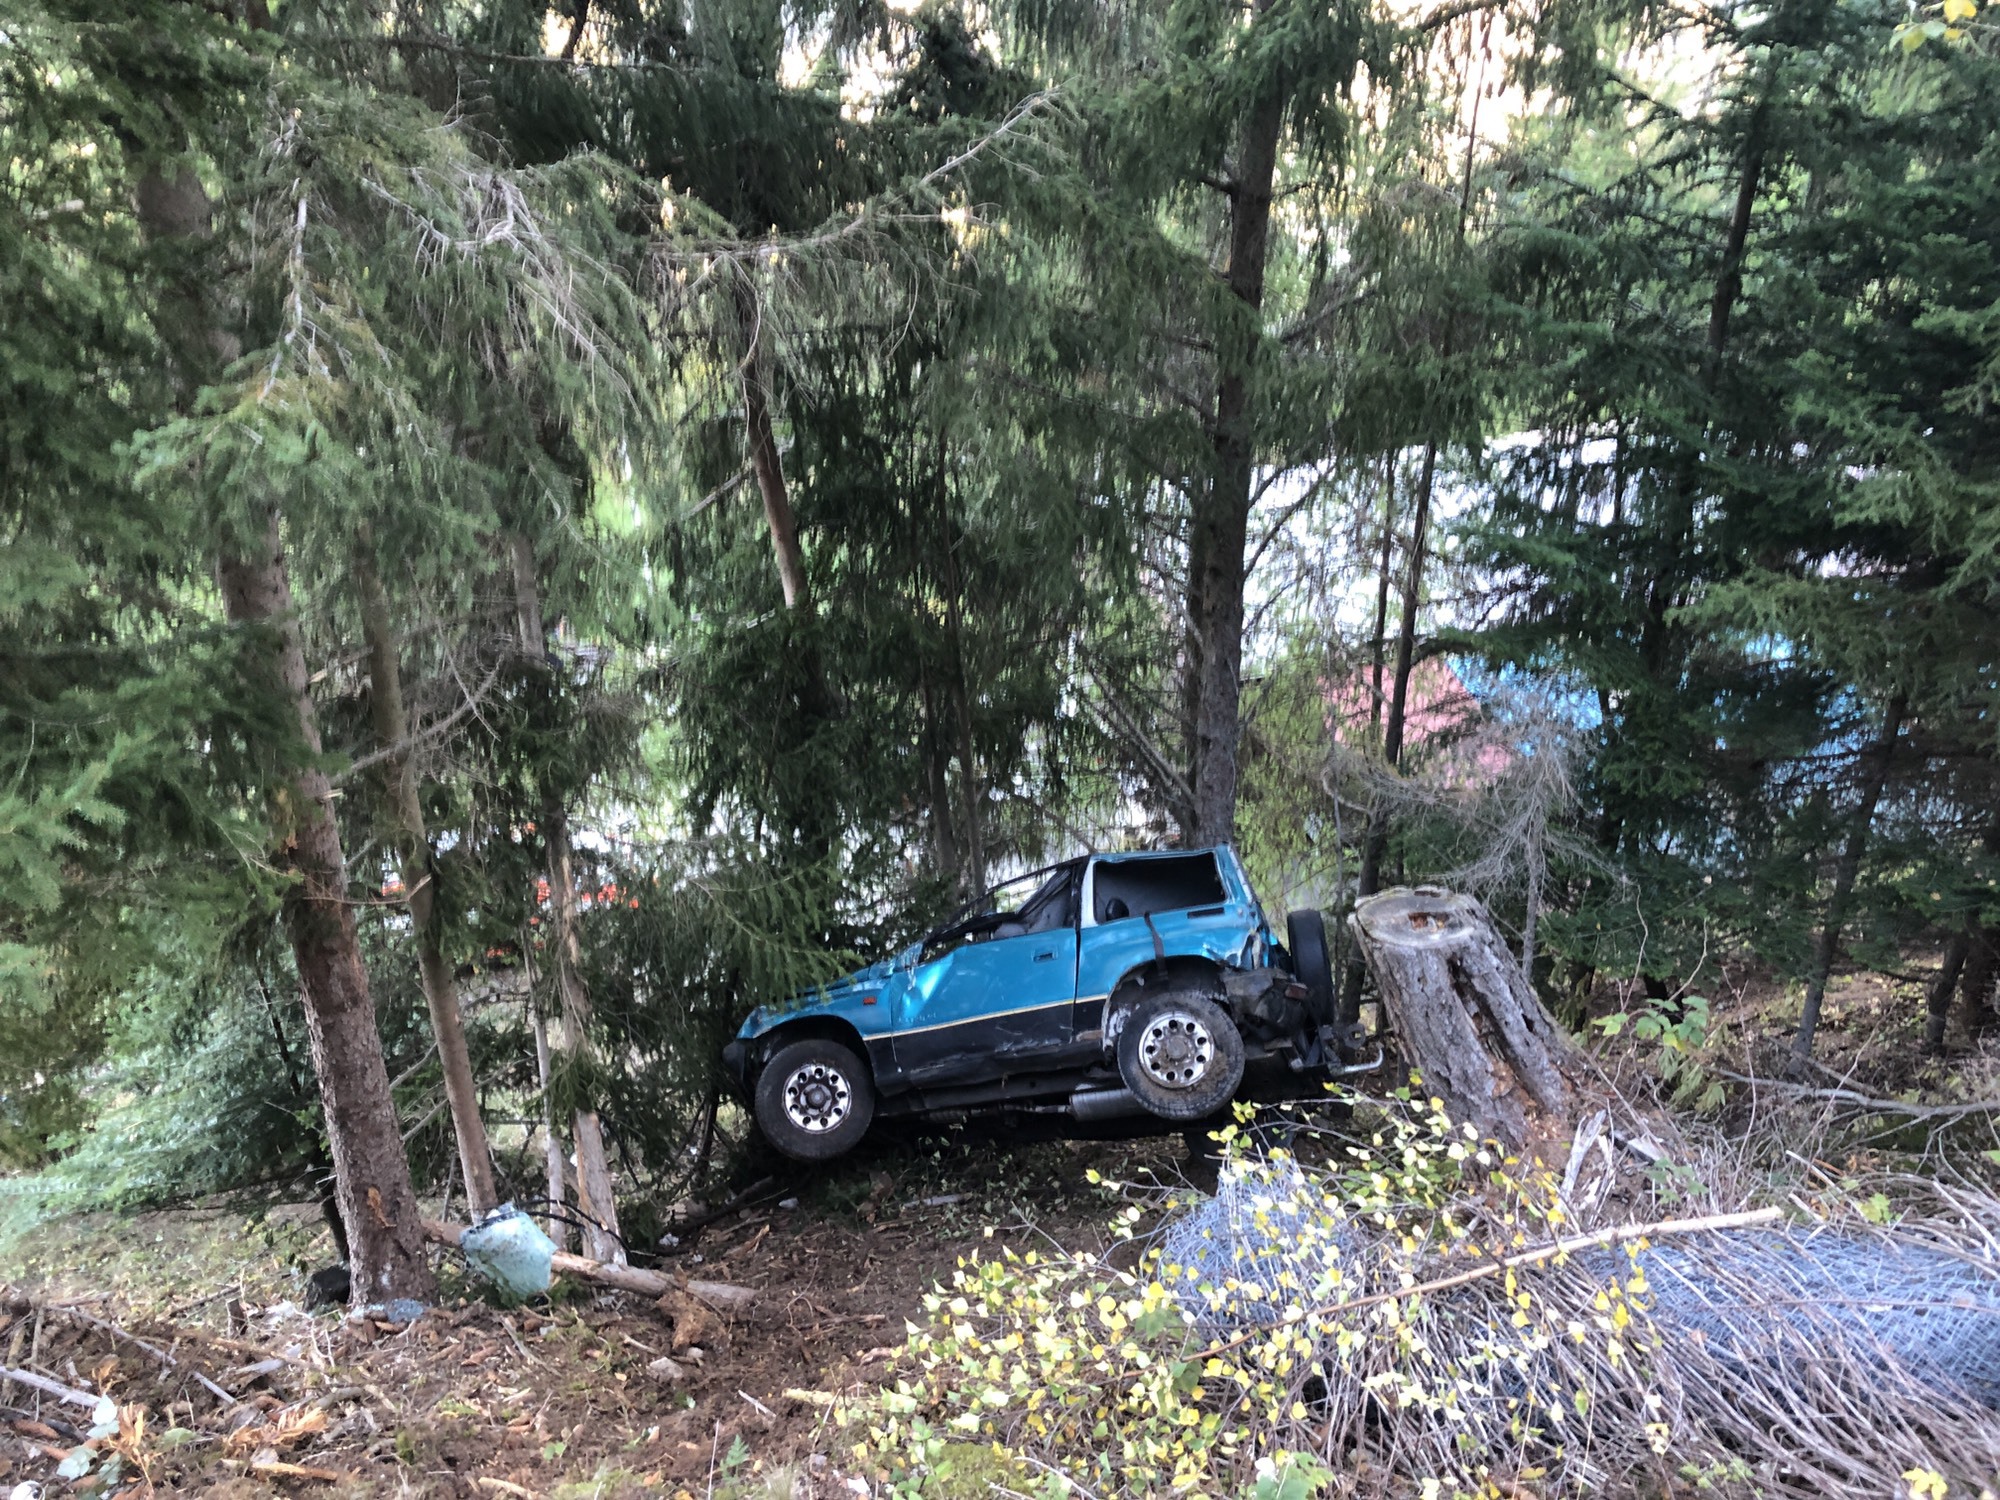 Le véhicule s'est renversé dans un terrain escarpé avant de s’immobiliser dans la forêt.